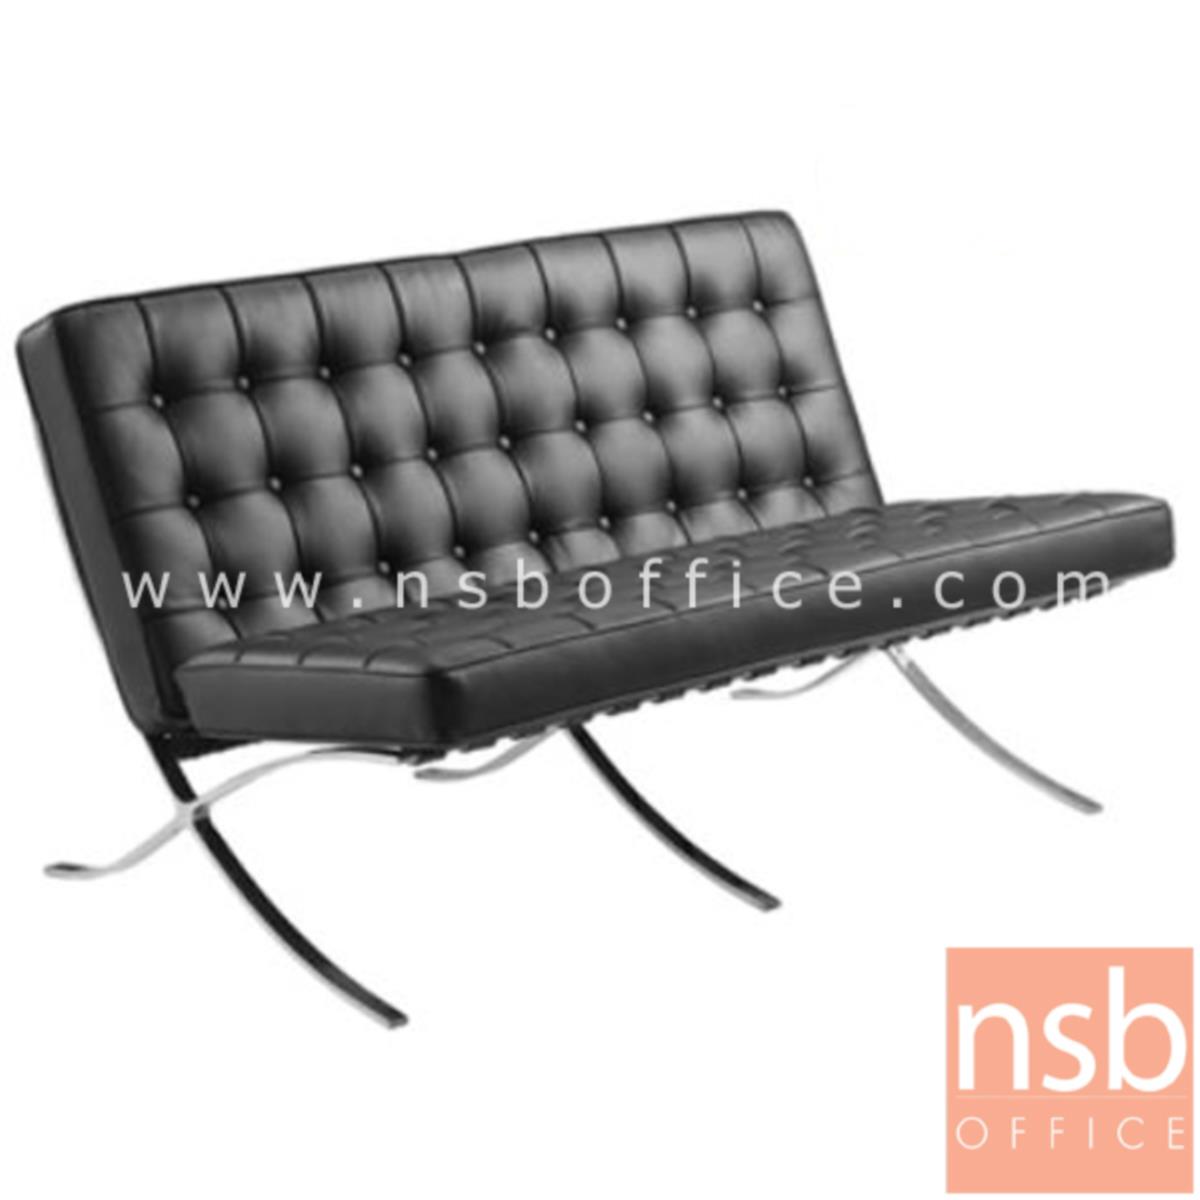 B15A024:เก้าอี้พักผ่อนหนังแท้ 2 ที่นั่ง  รุ่น Squarely  ขนาด 134W cm. โครงขาสเตนเลส